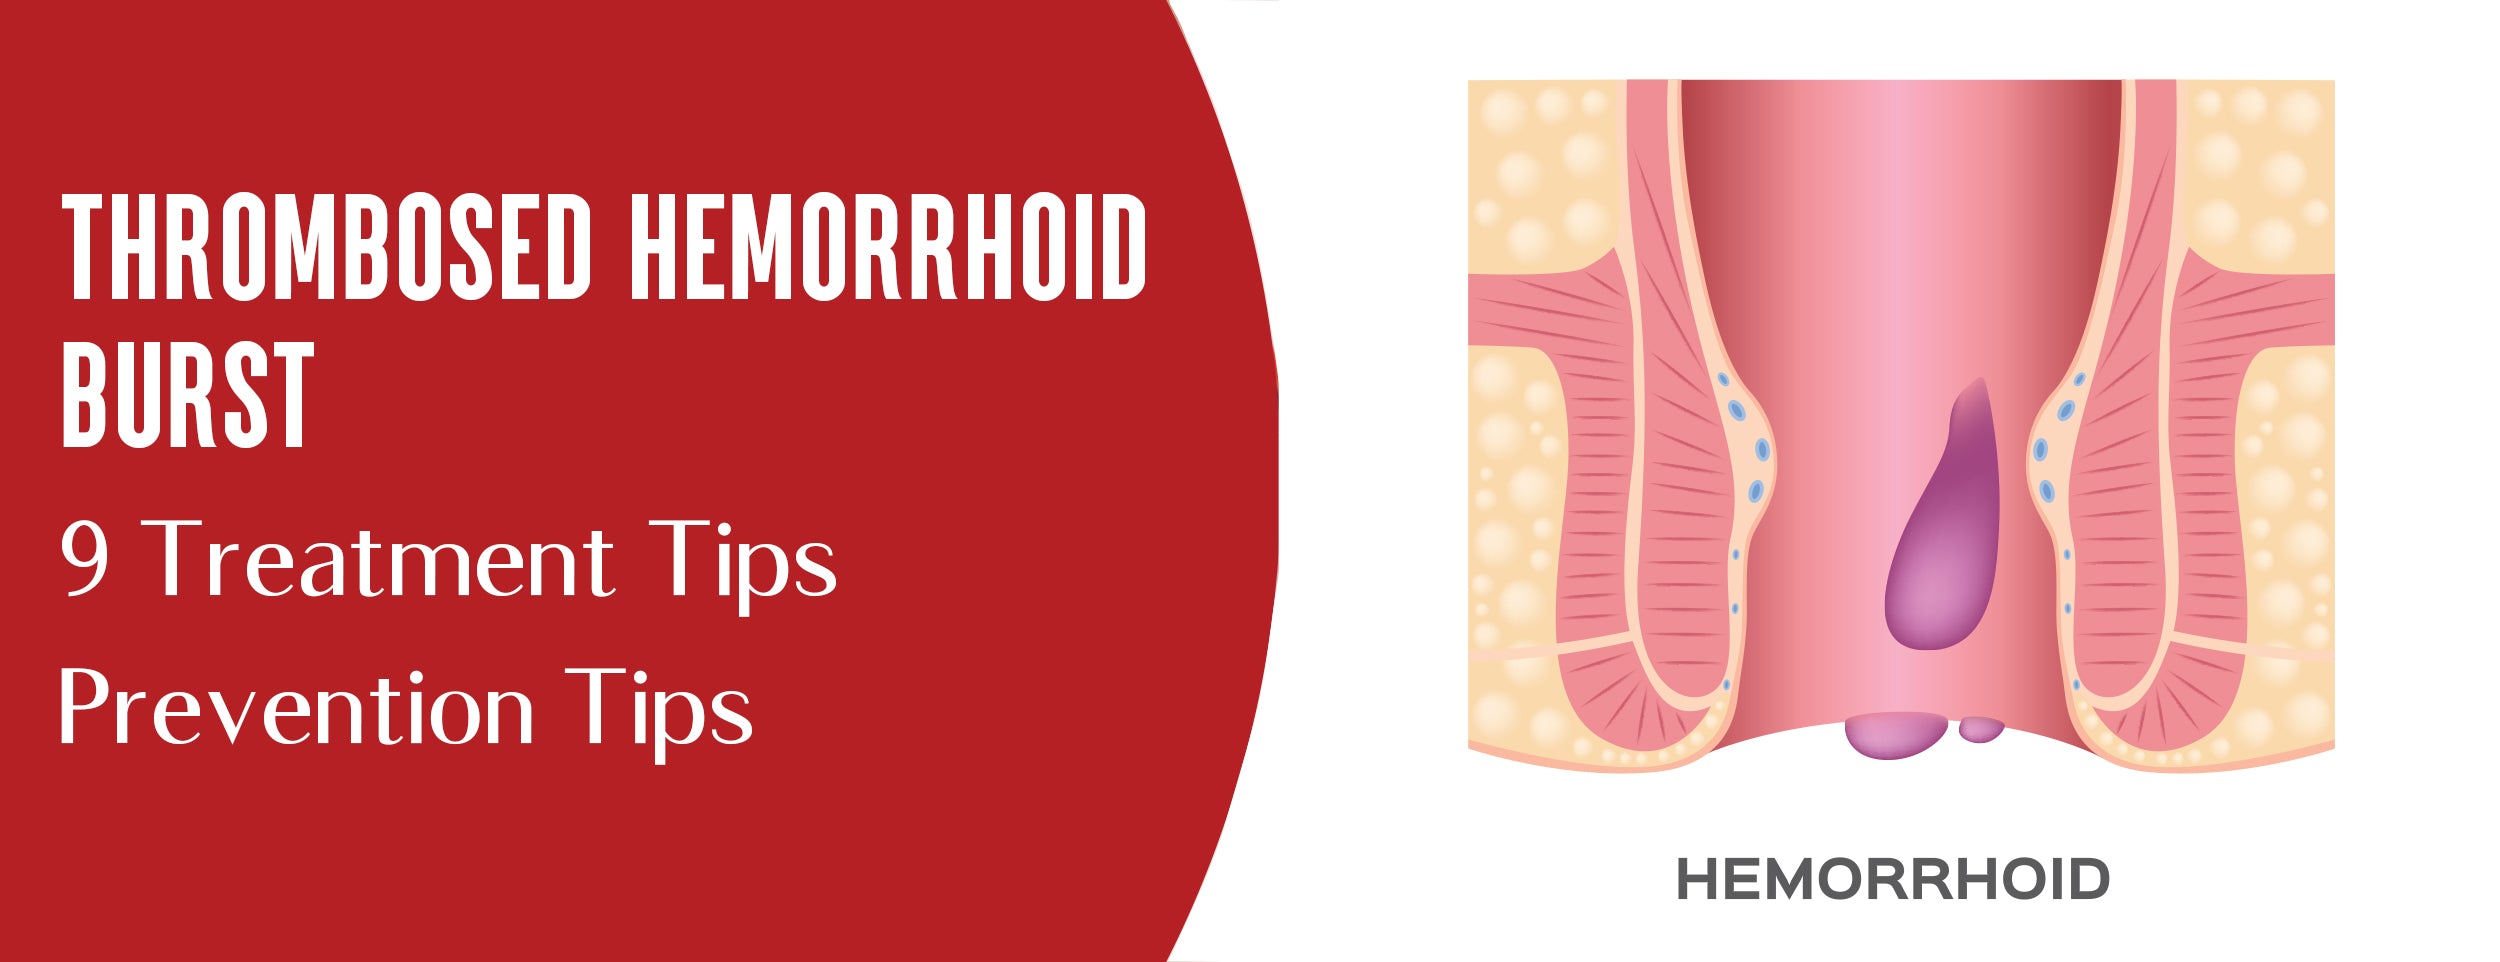 Treatment & Prevention Tips for Thrombosed Hemorrhoids